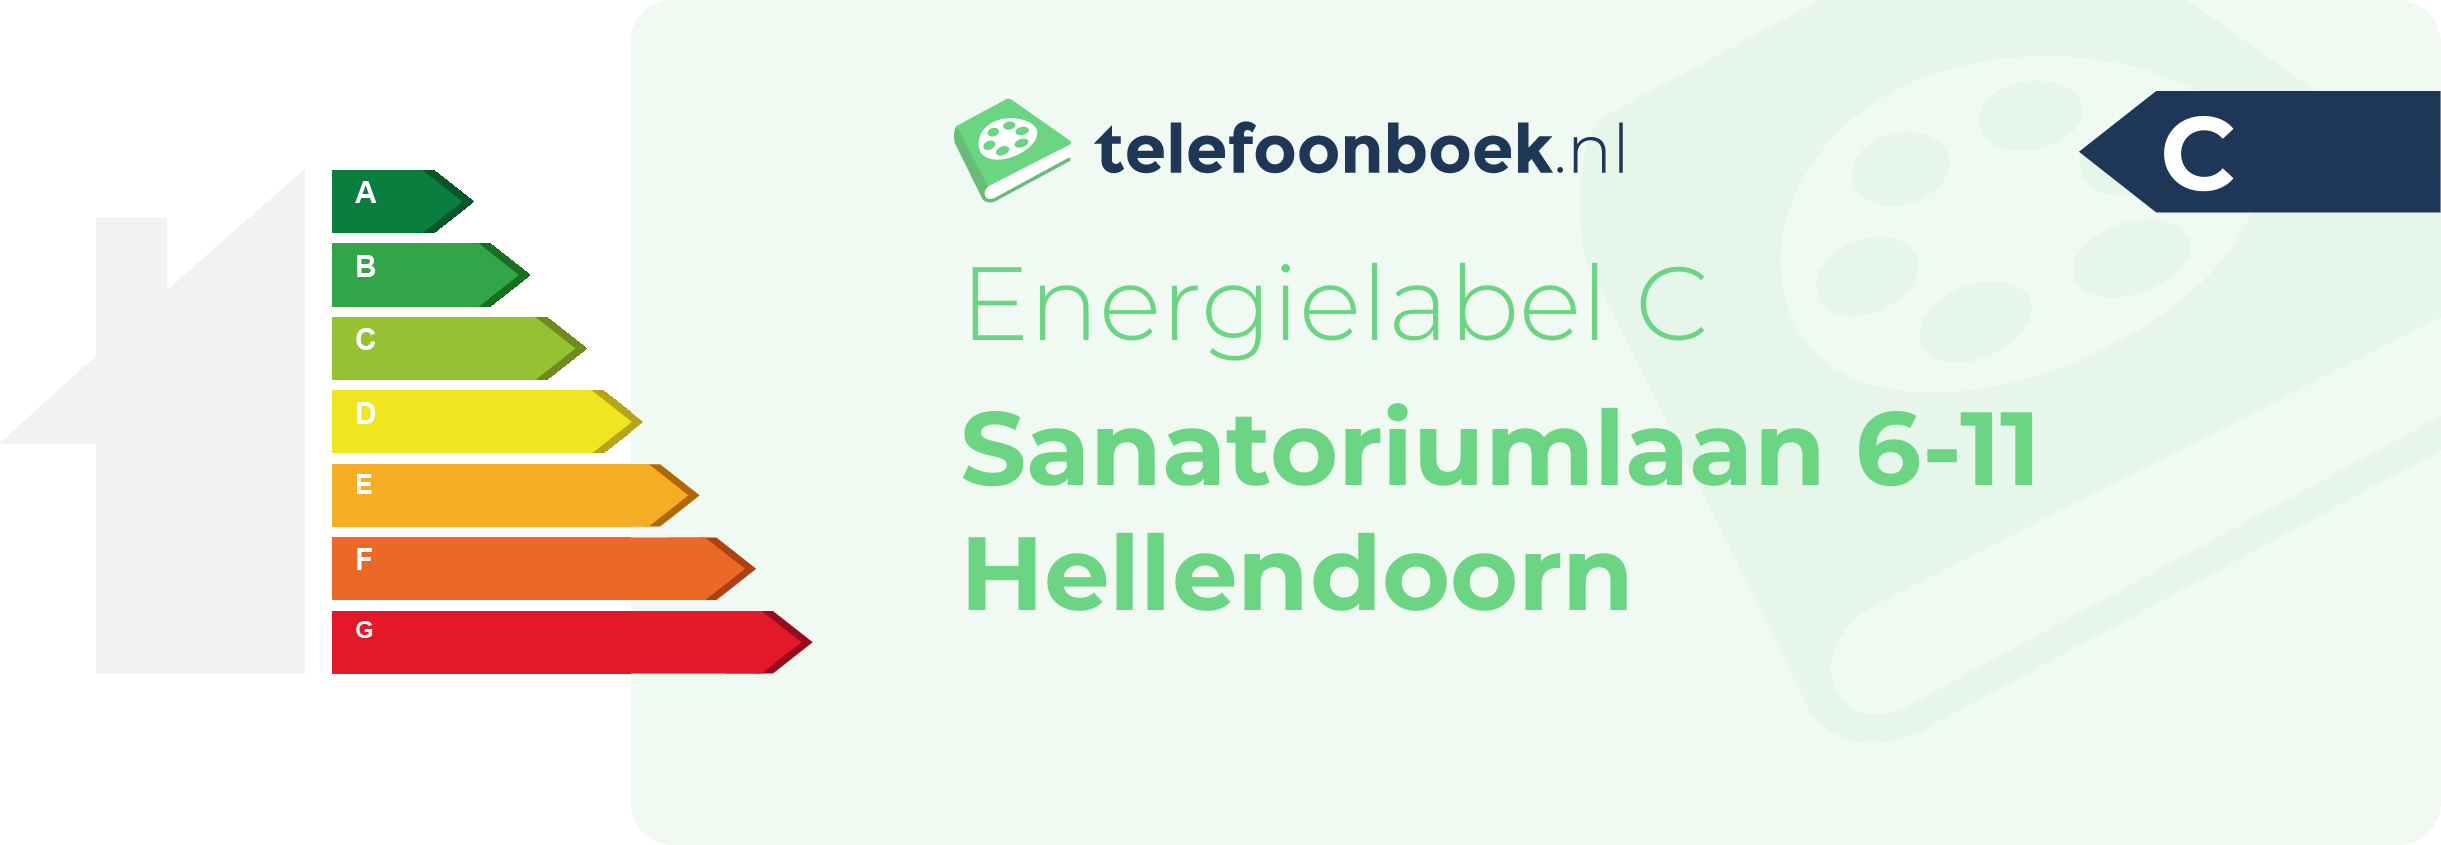 Energielabel Sanatoriumlaan 6-11 Hellendoorn